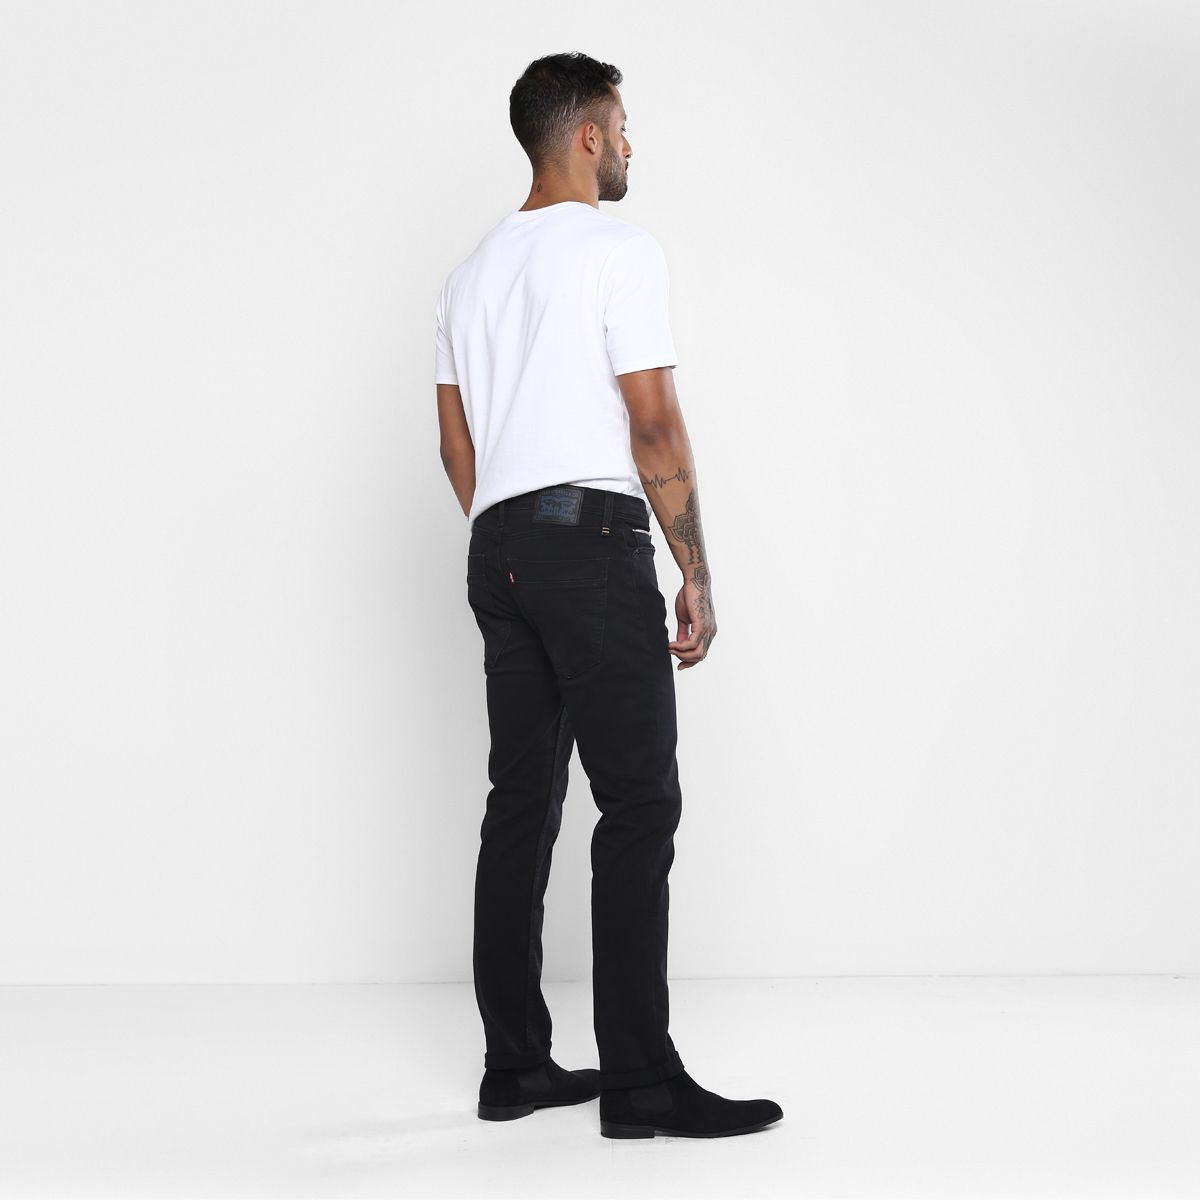 LEVIS MEN Single Length Jeans 86665-0000 Black 34